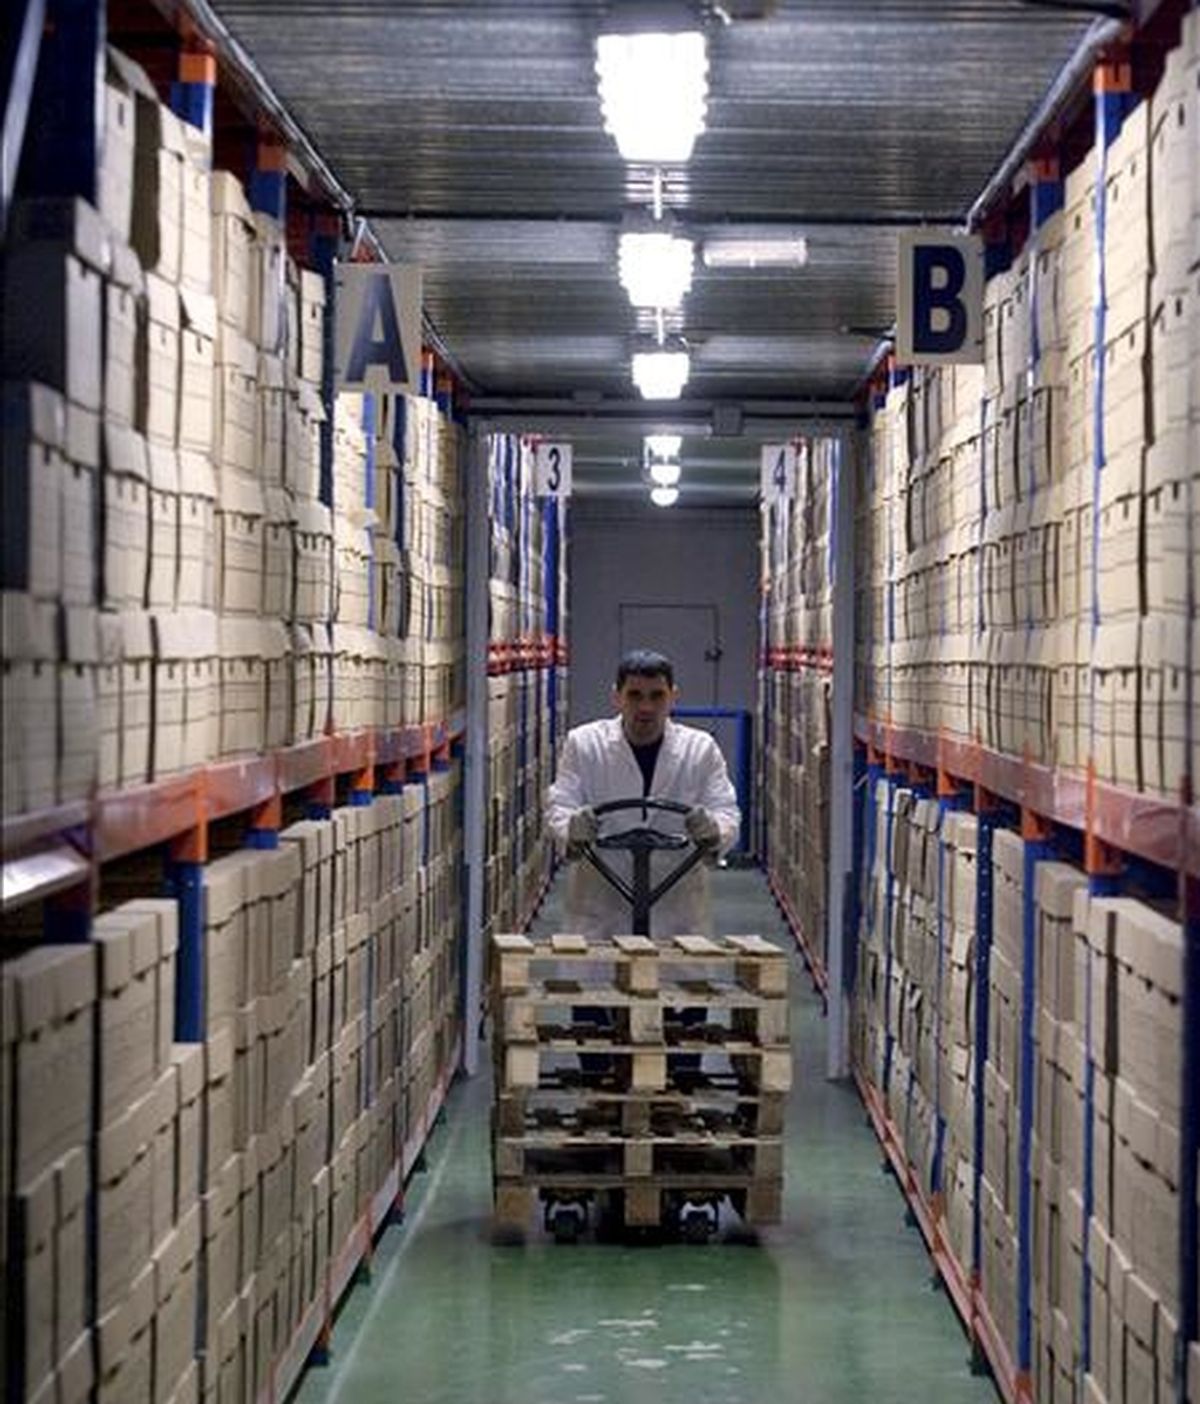 Un empleado de una empresa que almacena datos, en uno de los numerosos pasillos de sus instalaciones. EFE/Archivo